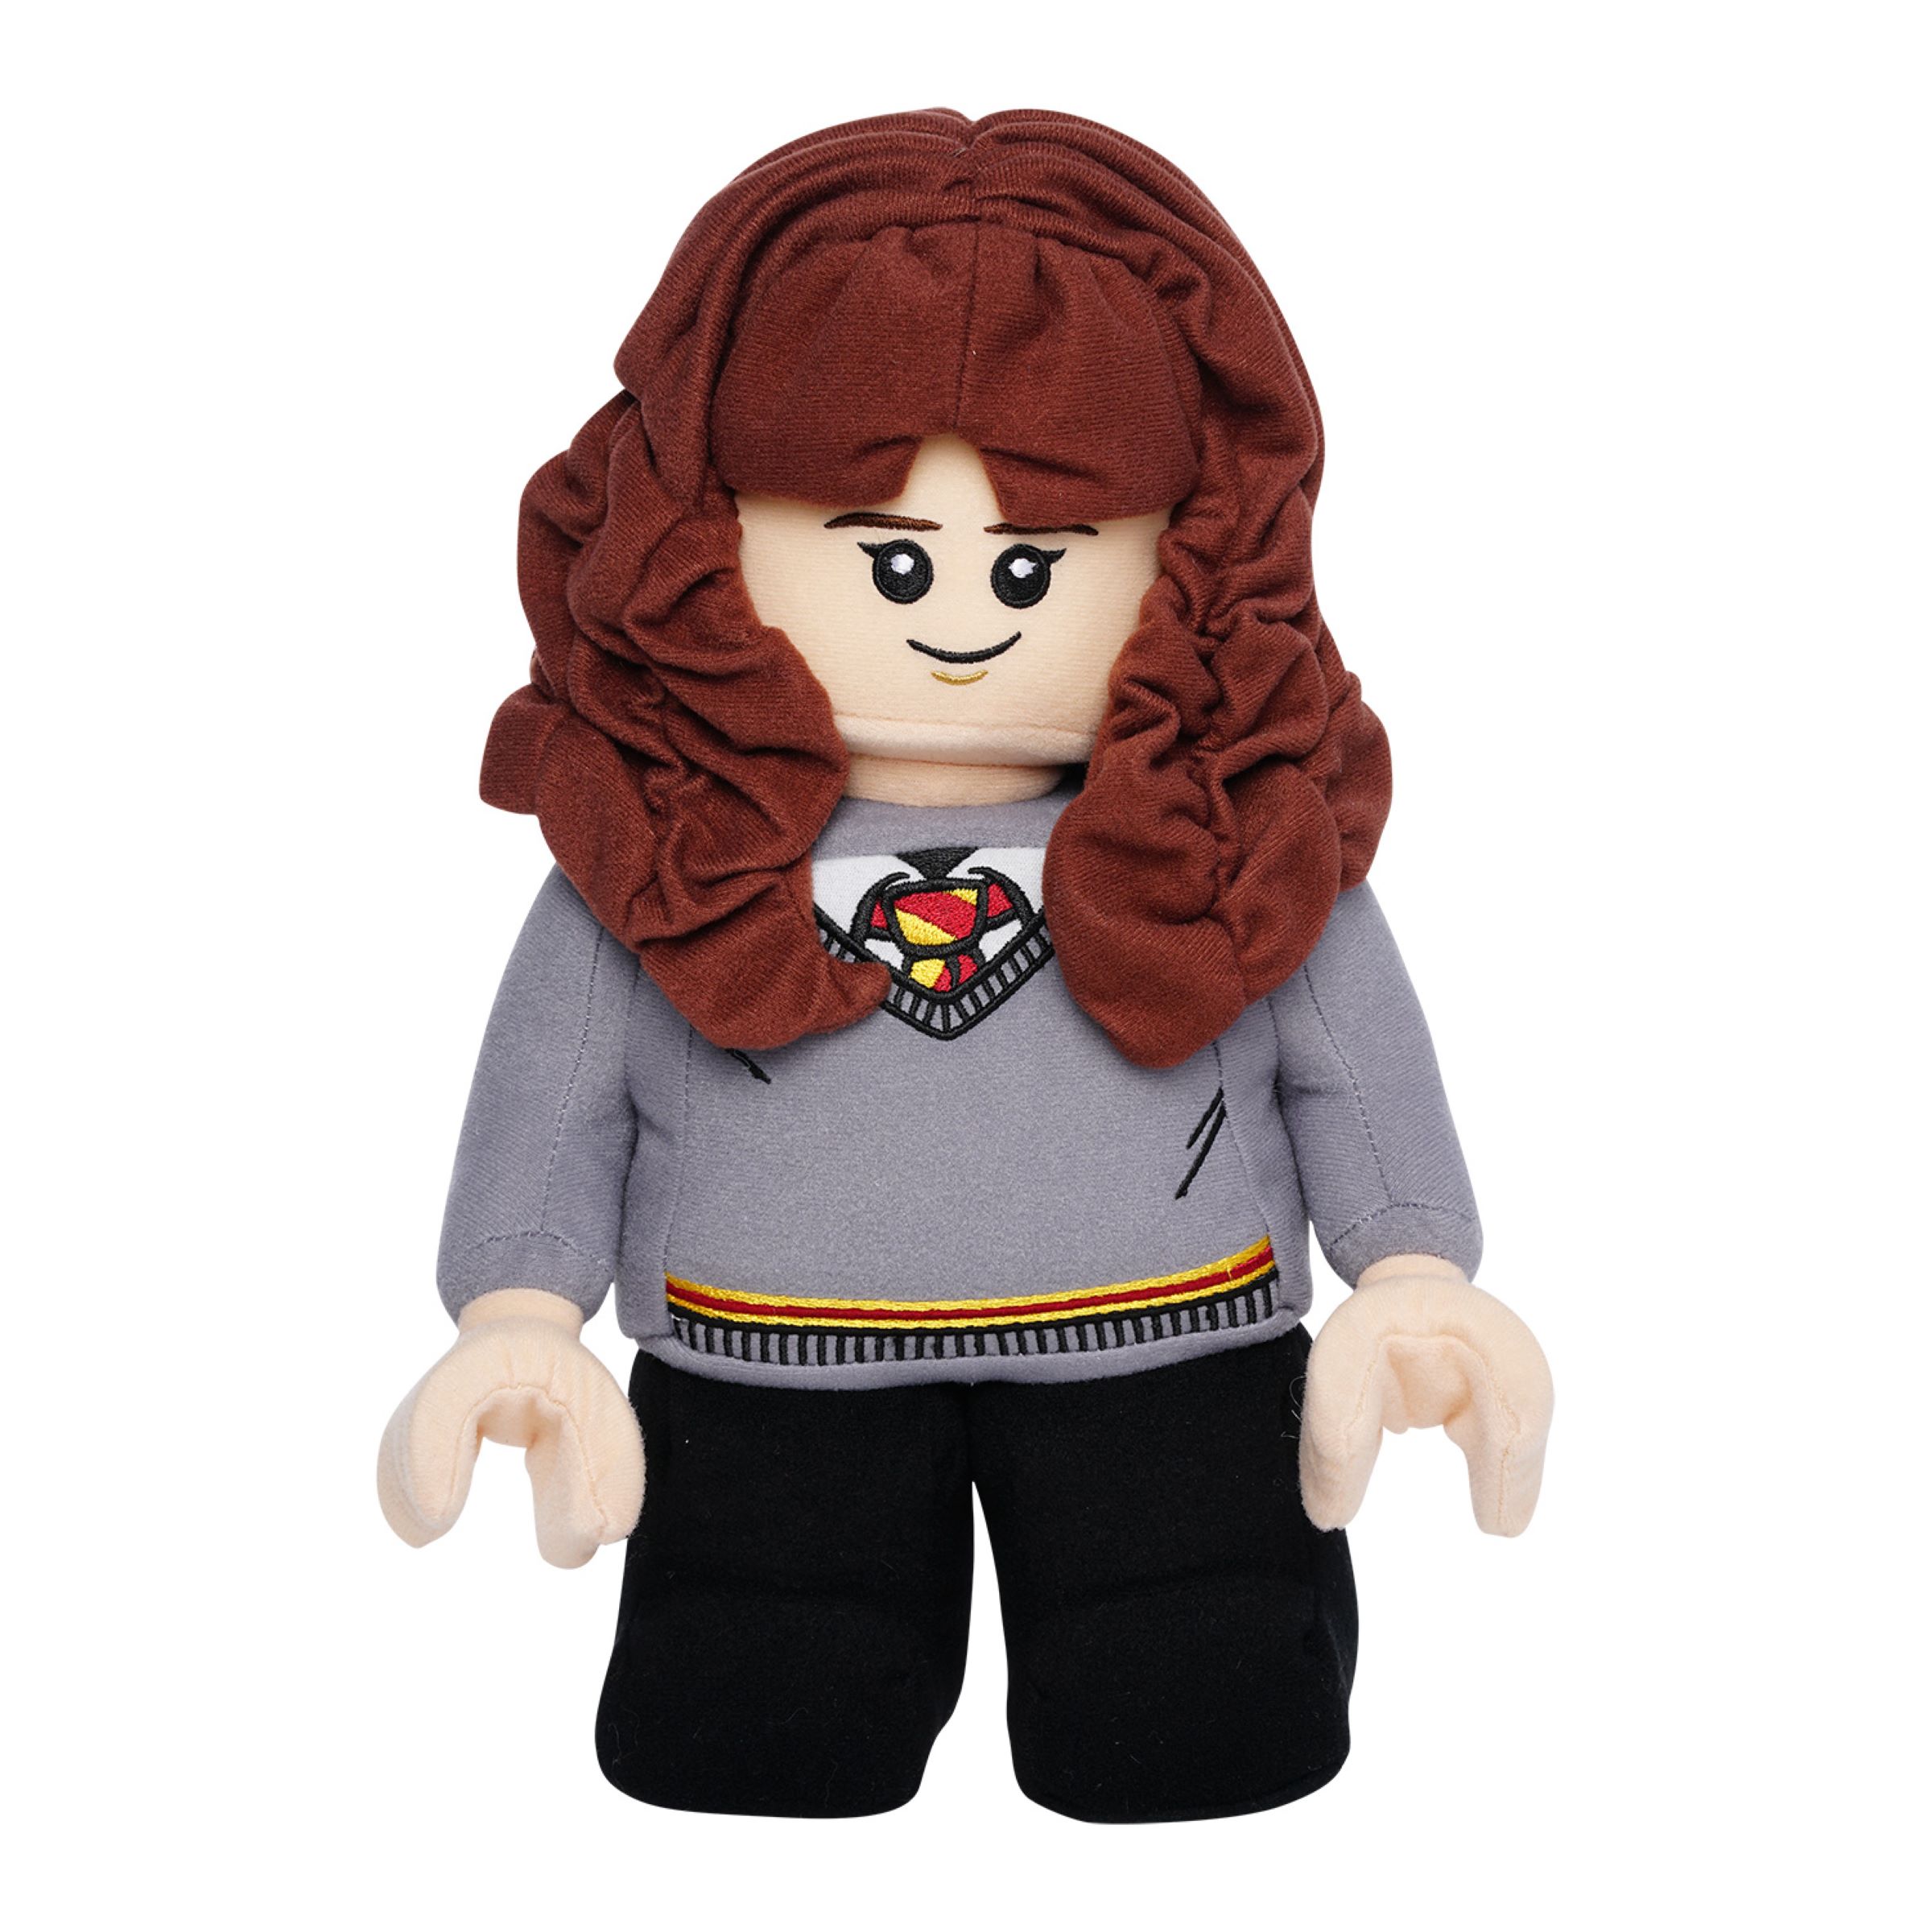 5007453 Hermione Granger Plush LEGO Set, Deals & Reviews